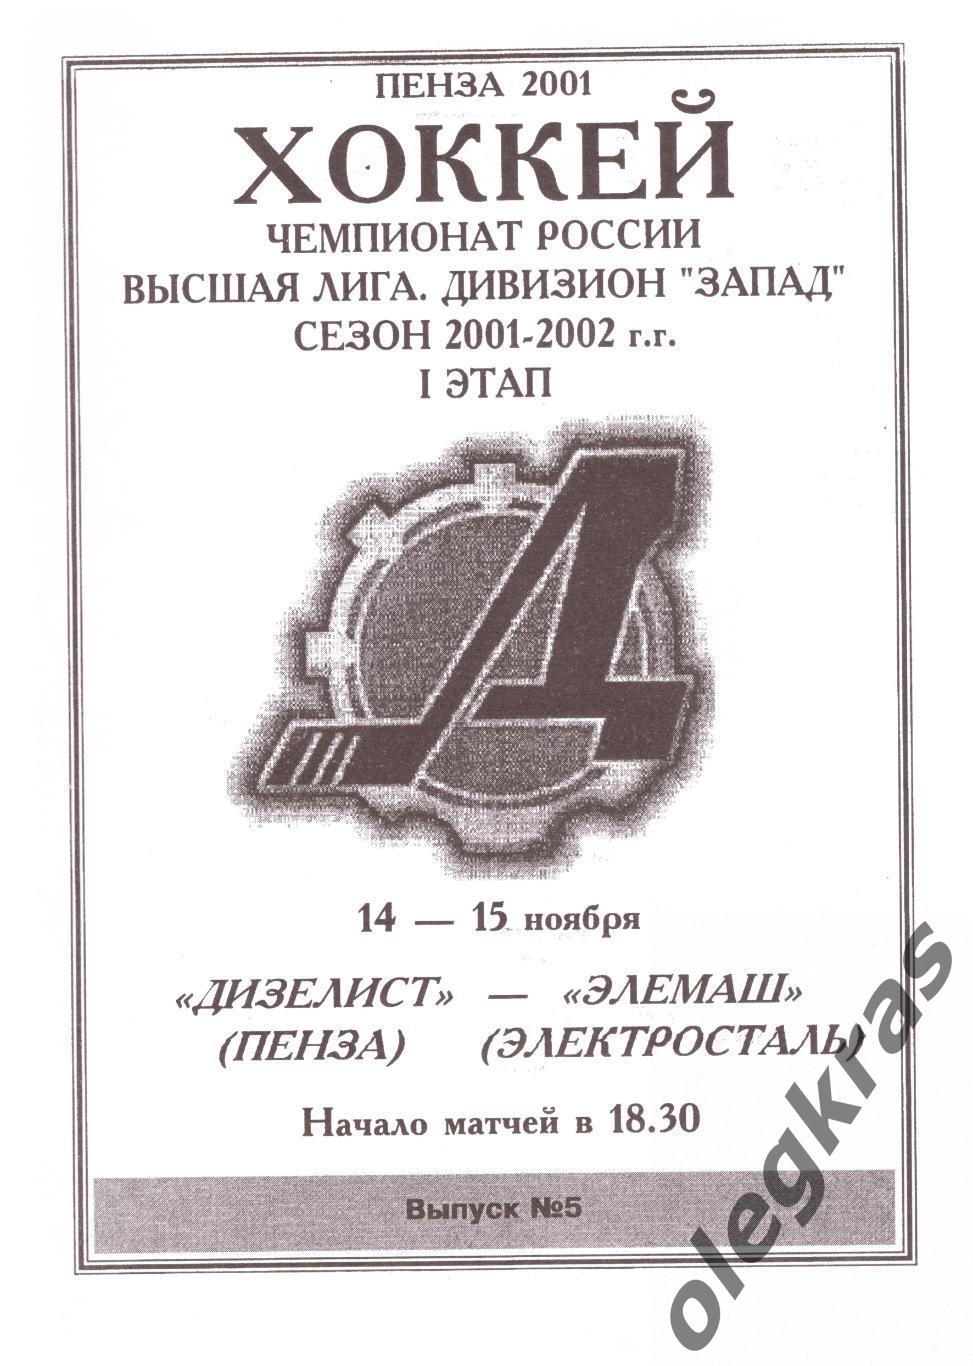 Дизелист(Пенза) - Элемаш(Электросталь) - 14-15 ноября 2001 года.